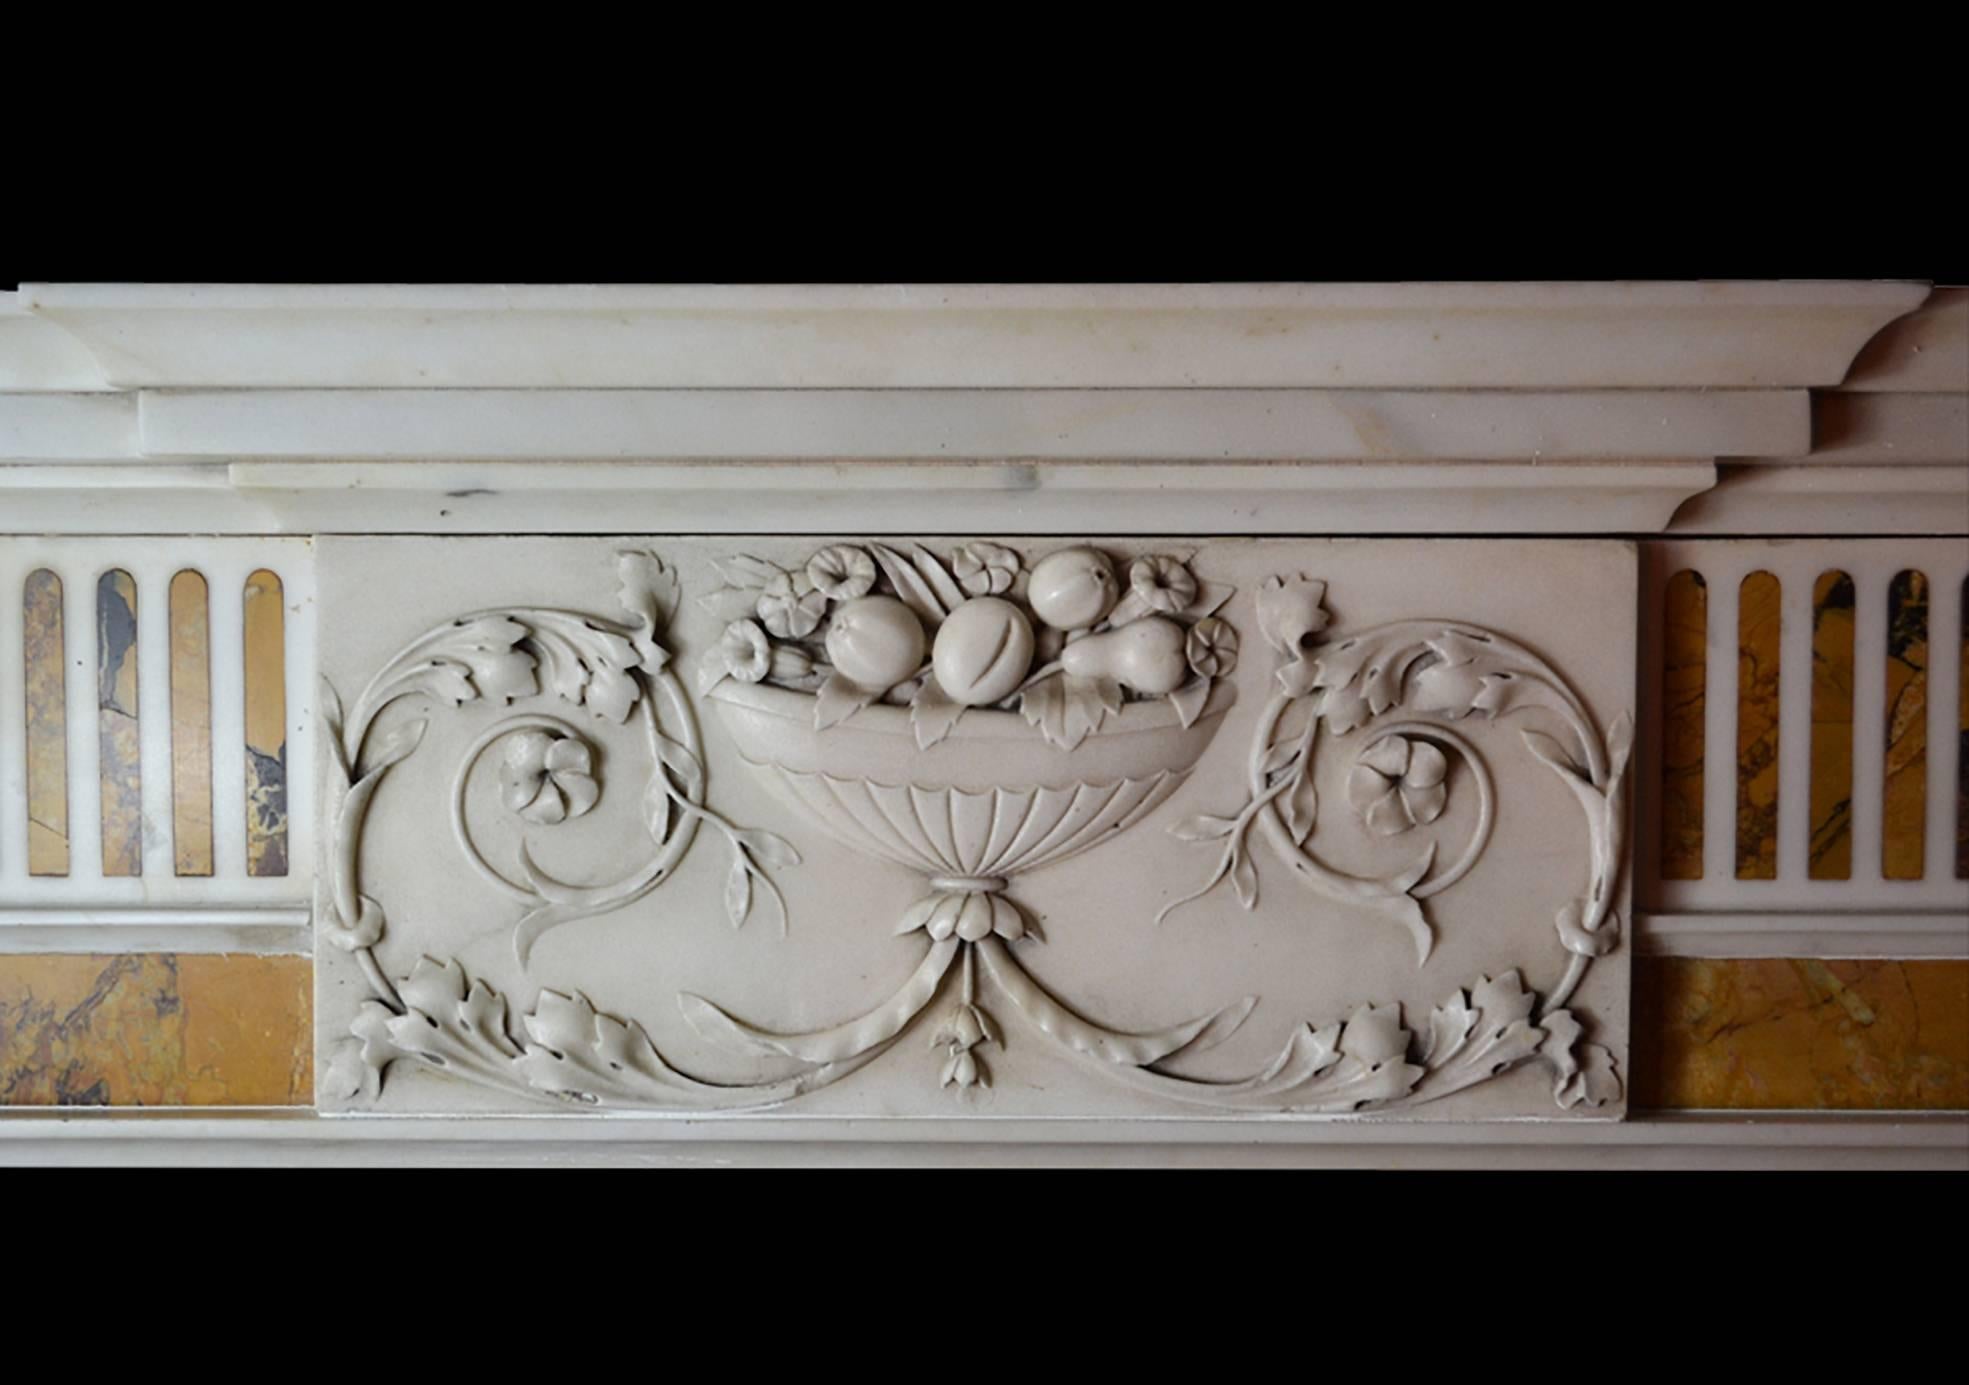 Ein eleganter und wohlproportionierter irischer Kamin aus dem späten 18. Jahrhundert aus Marmor GEO-ZE29, um 1790. Der Kamin hat spitz zulaufende Pilaster mit Intarsien aus dem Siena-Kloster, die unter langgestreckten Eckblöcken mit klassisch